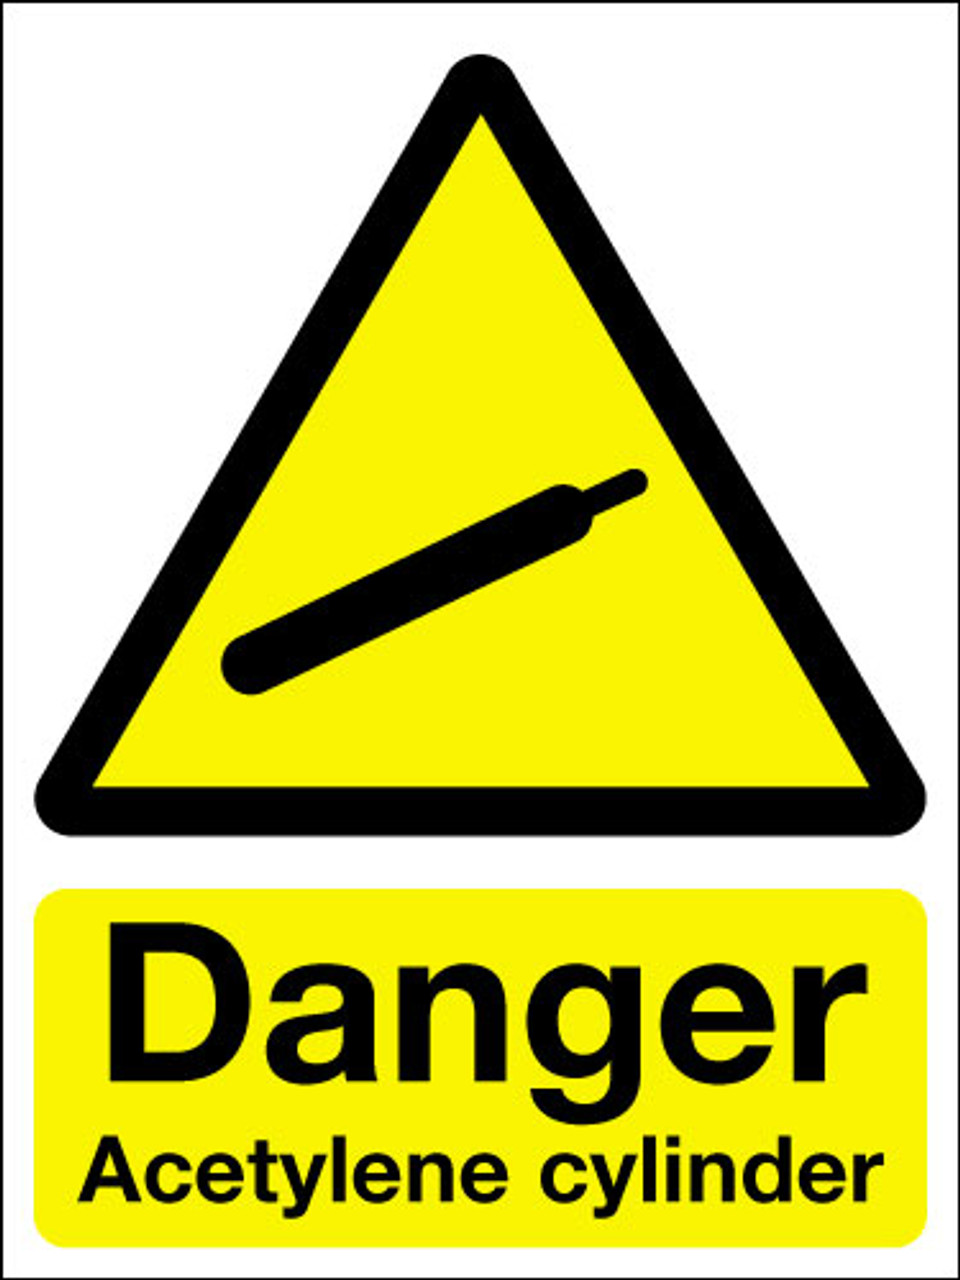 Danger acetylene cylinder sign